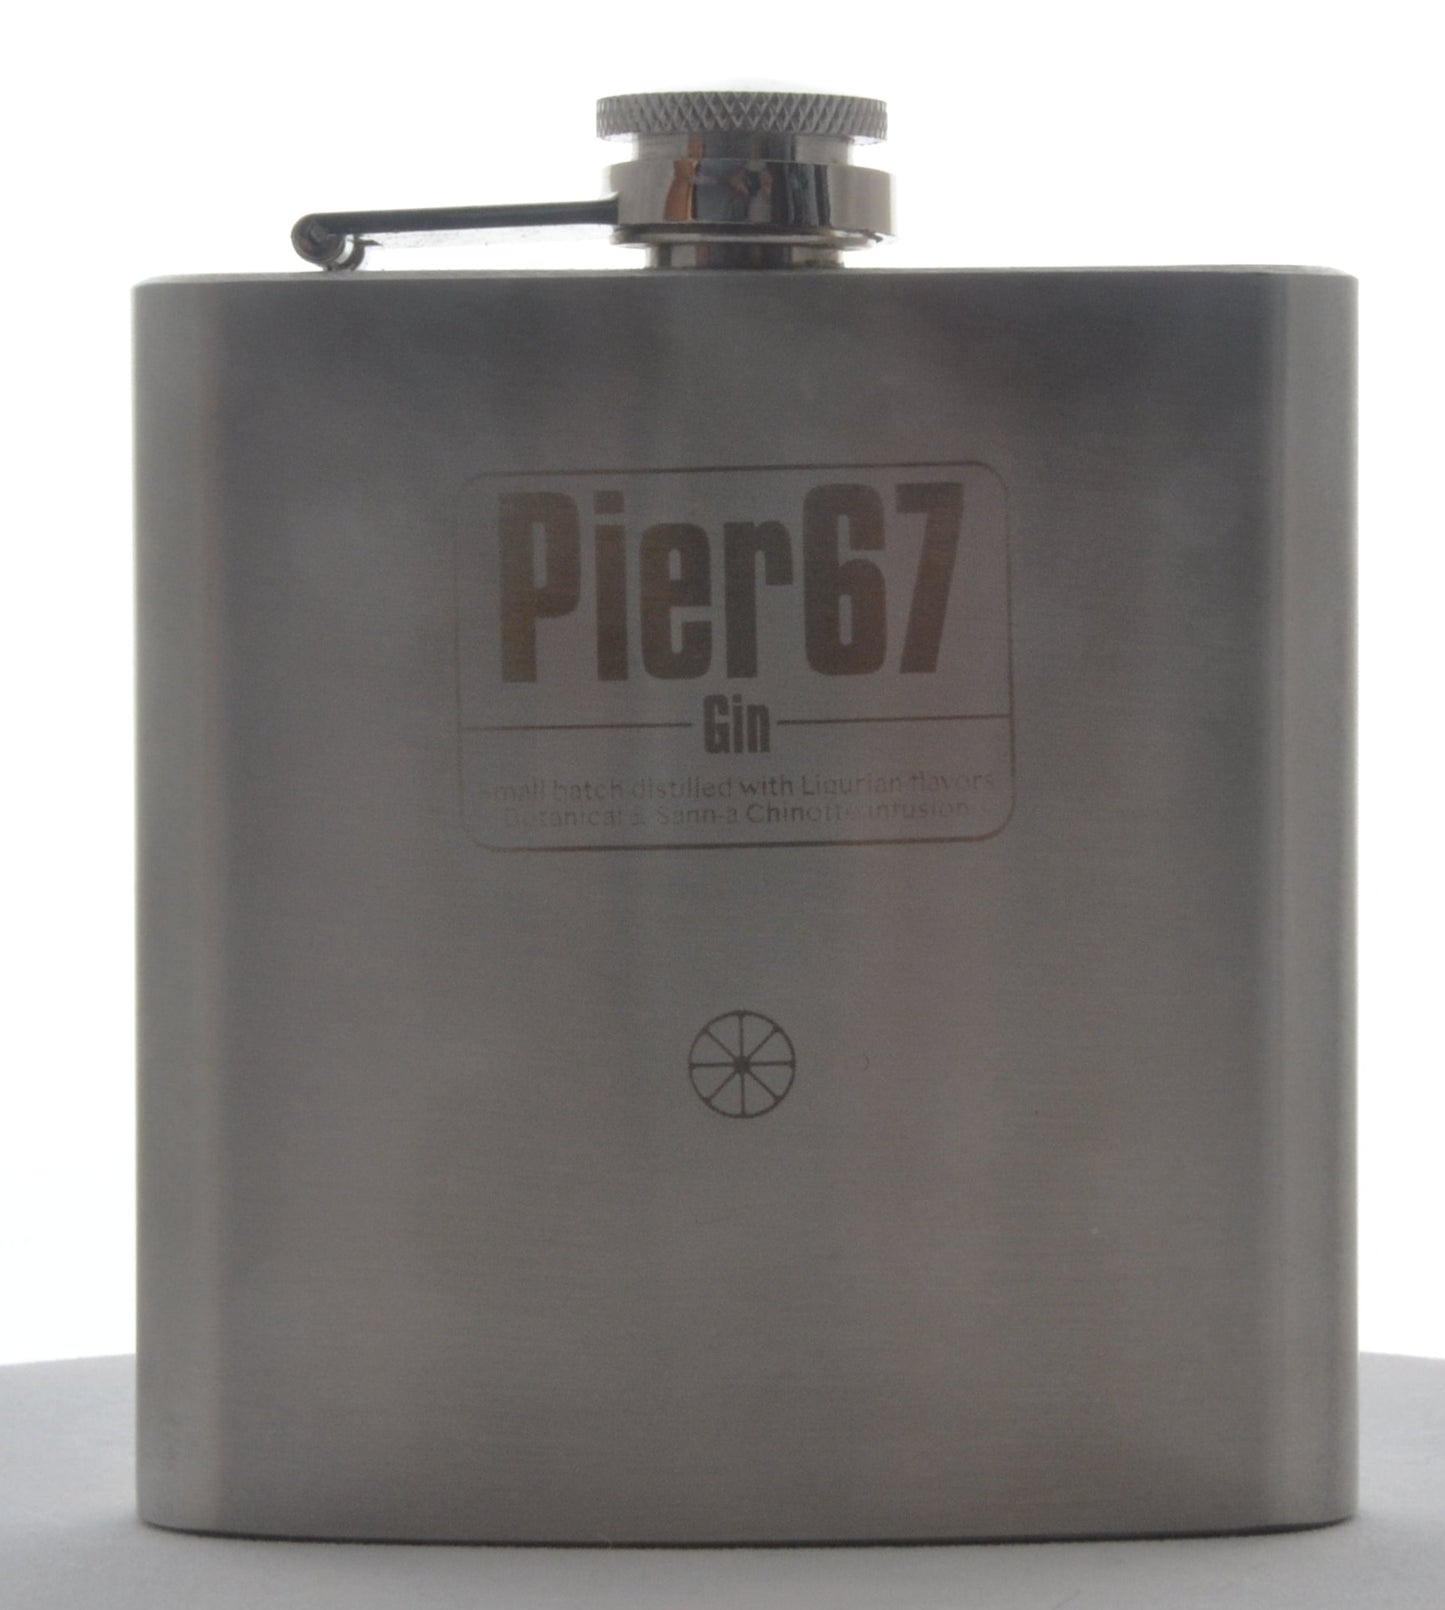 Flask - Pier67